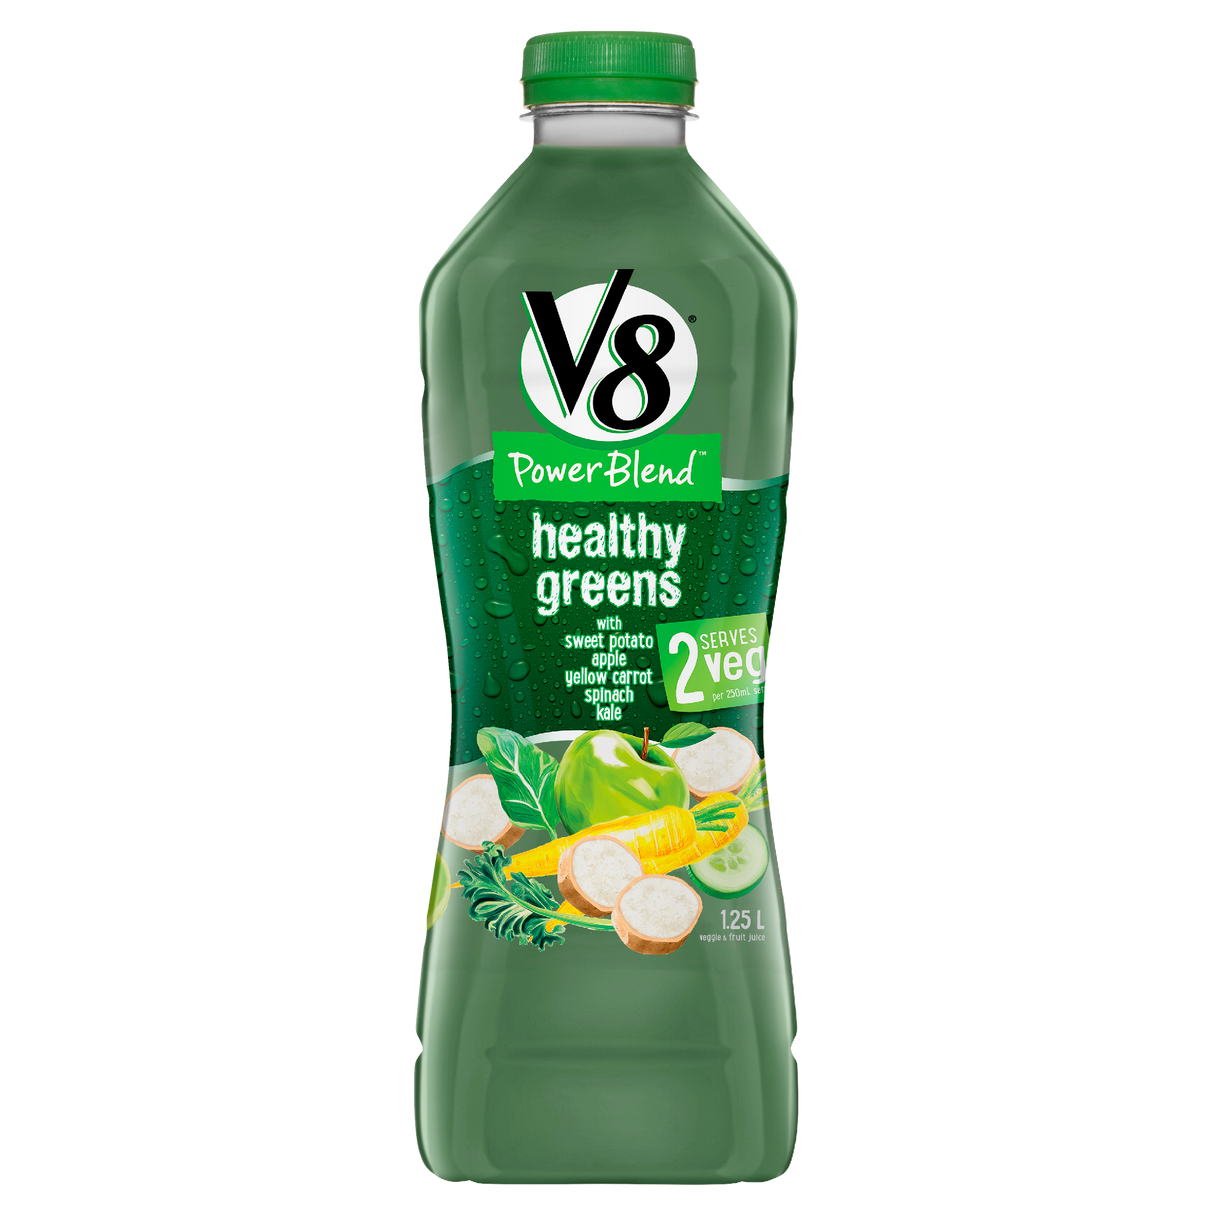 V8 Healthy Greens Power Blend Juice 1.25l